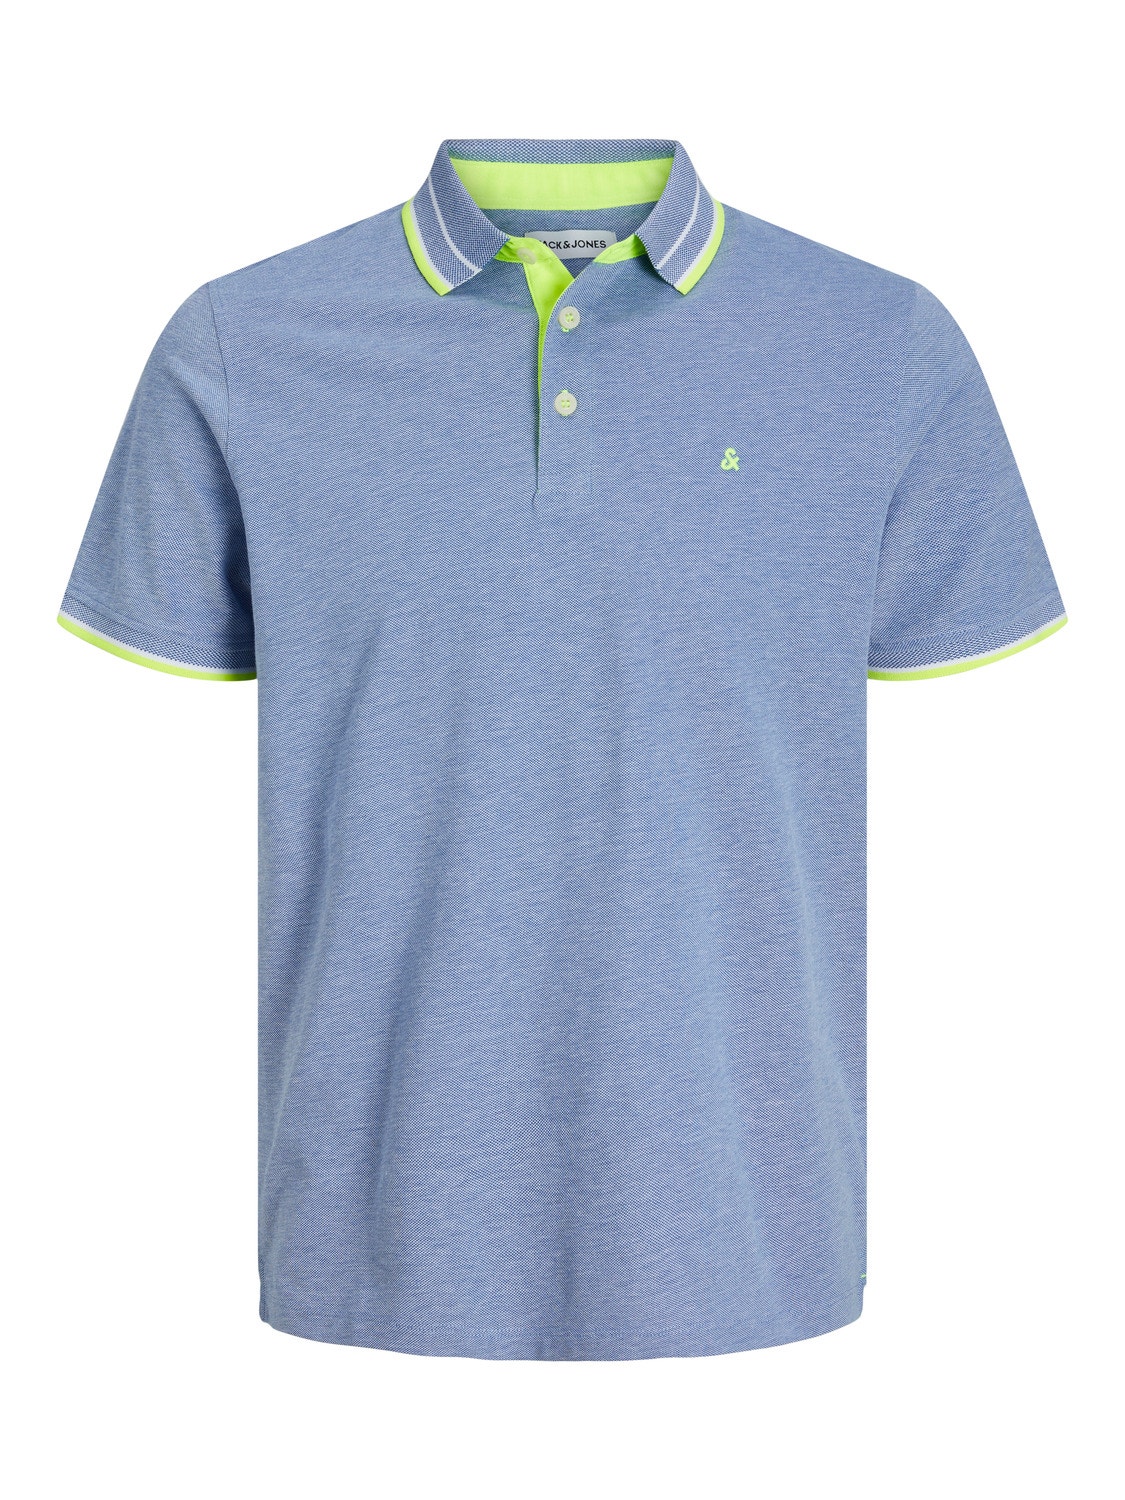 Jack & Jones Plus Size T-shirt Liso -Bright Cobalt - 12143859